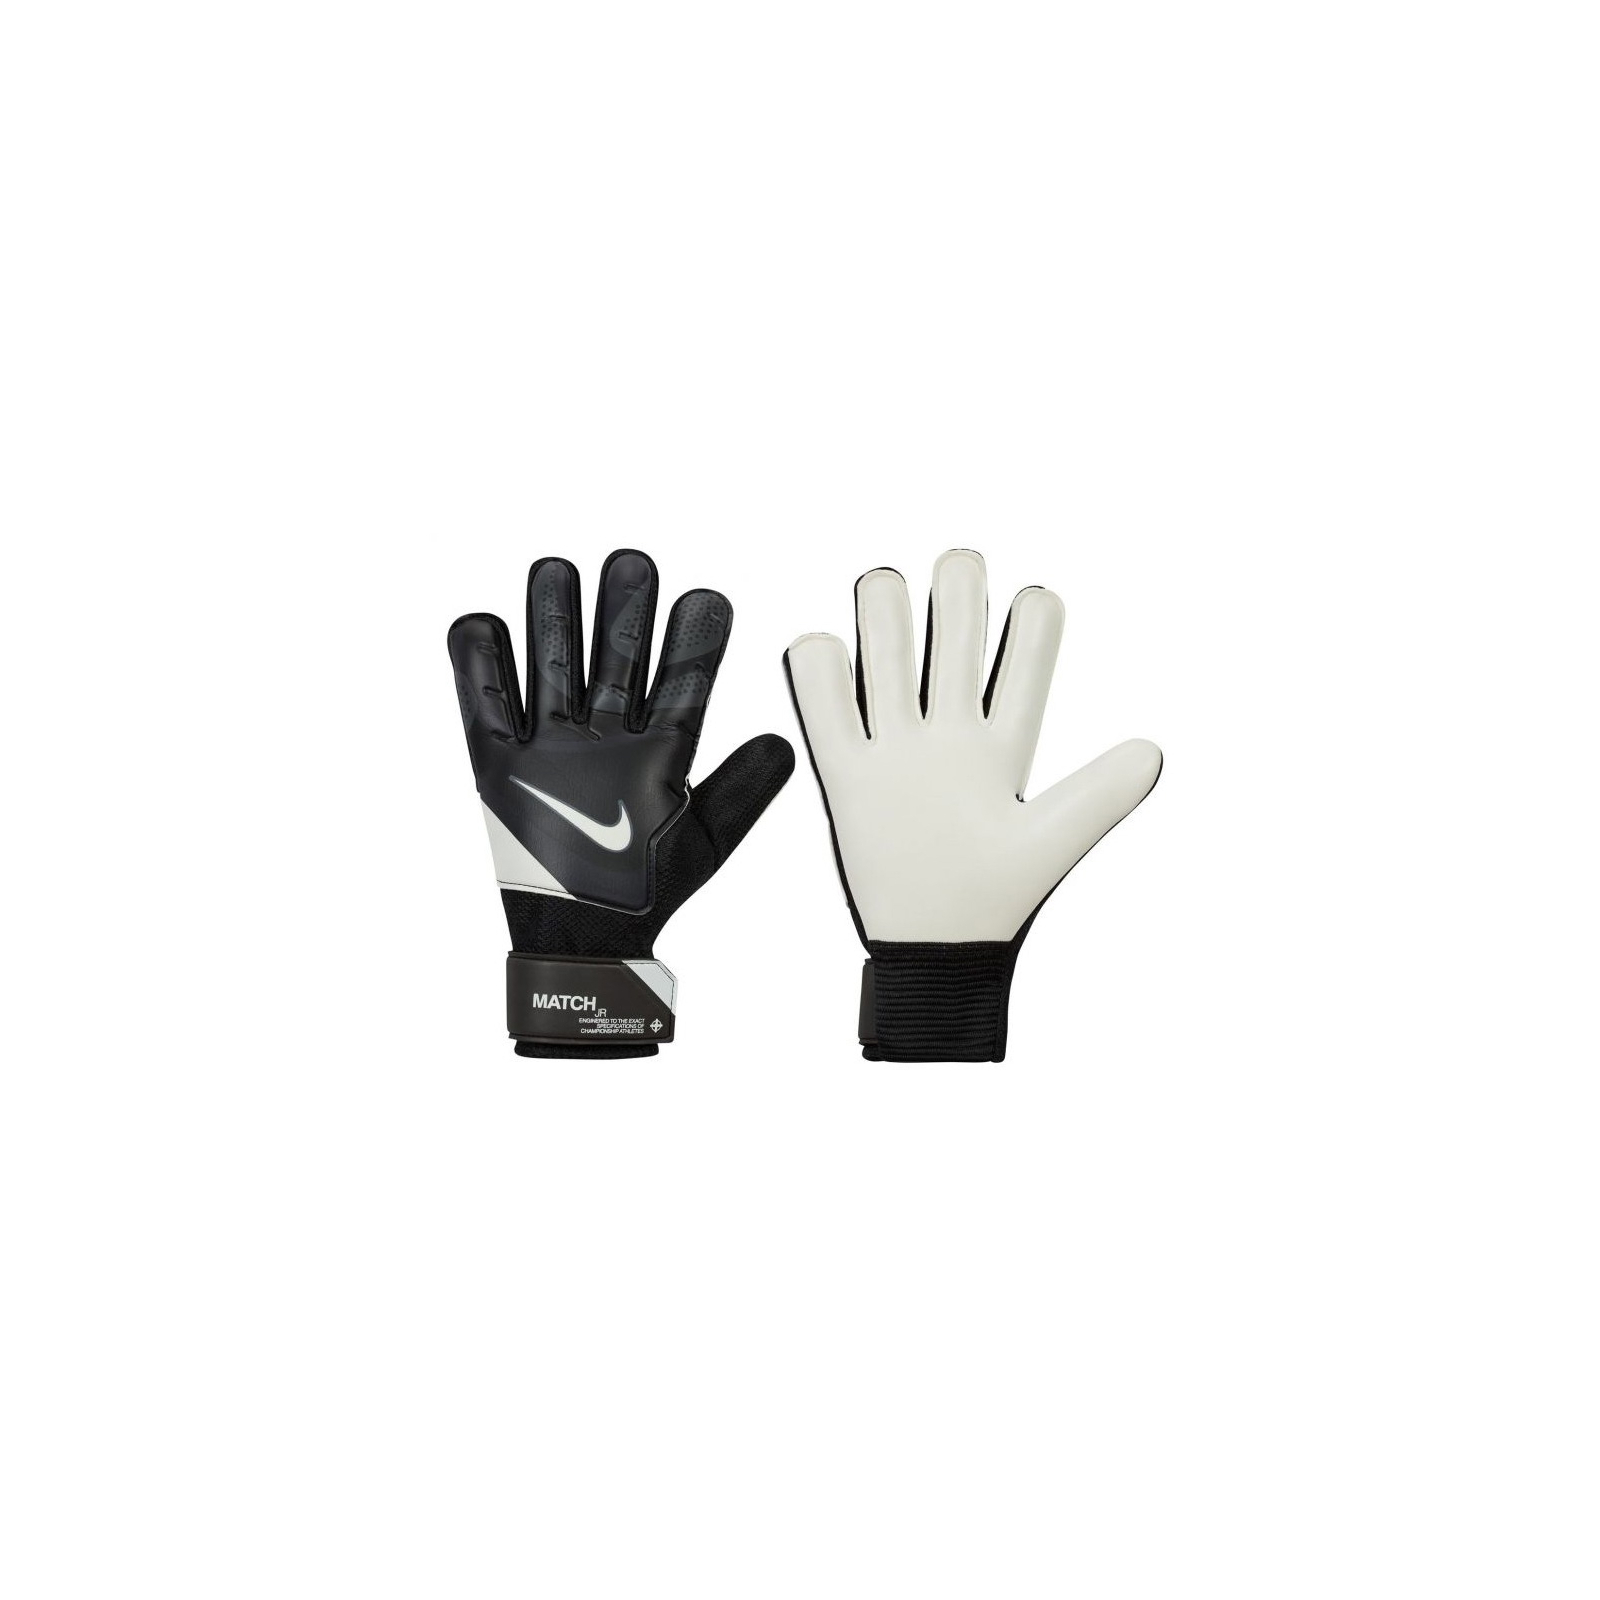 Вратарские перчатки Nike NK GK Match JR - HO23 FJ4864-011 чорний, білий Діт 6 (196968940745)